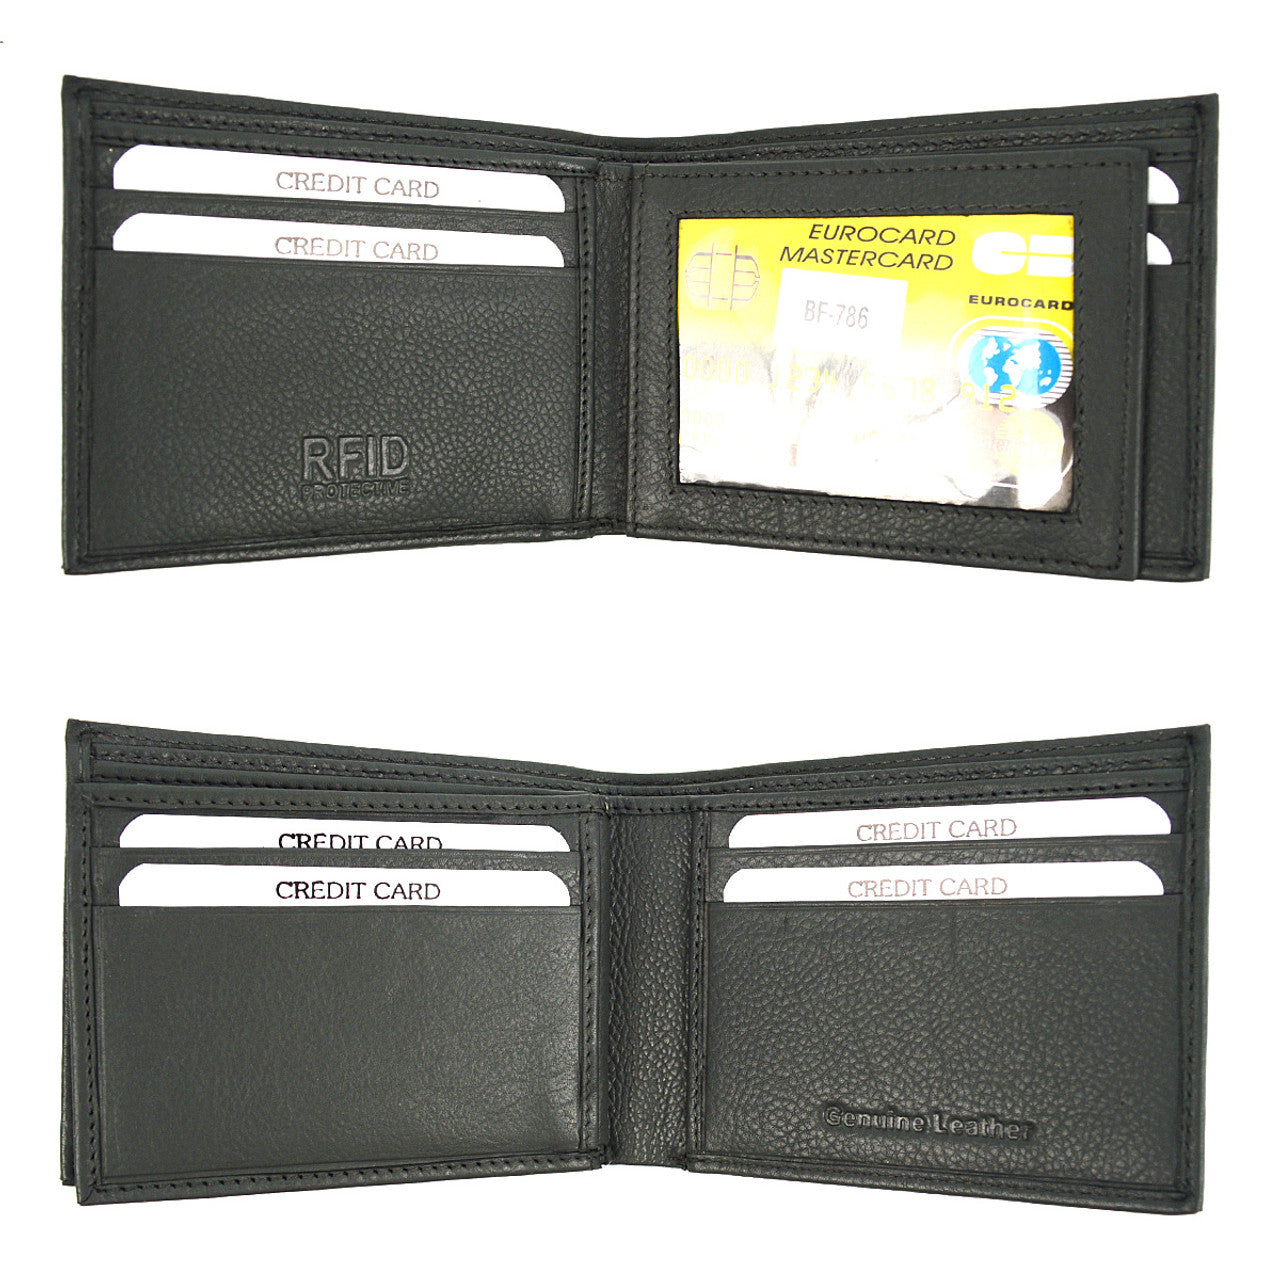 Two-leaf RFID Wallet - Black